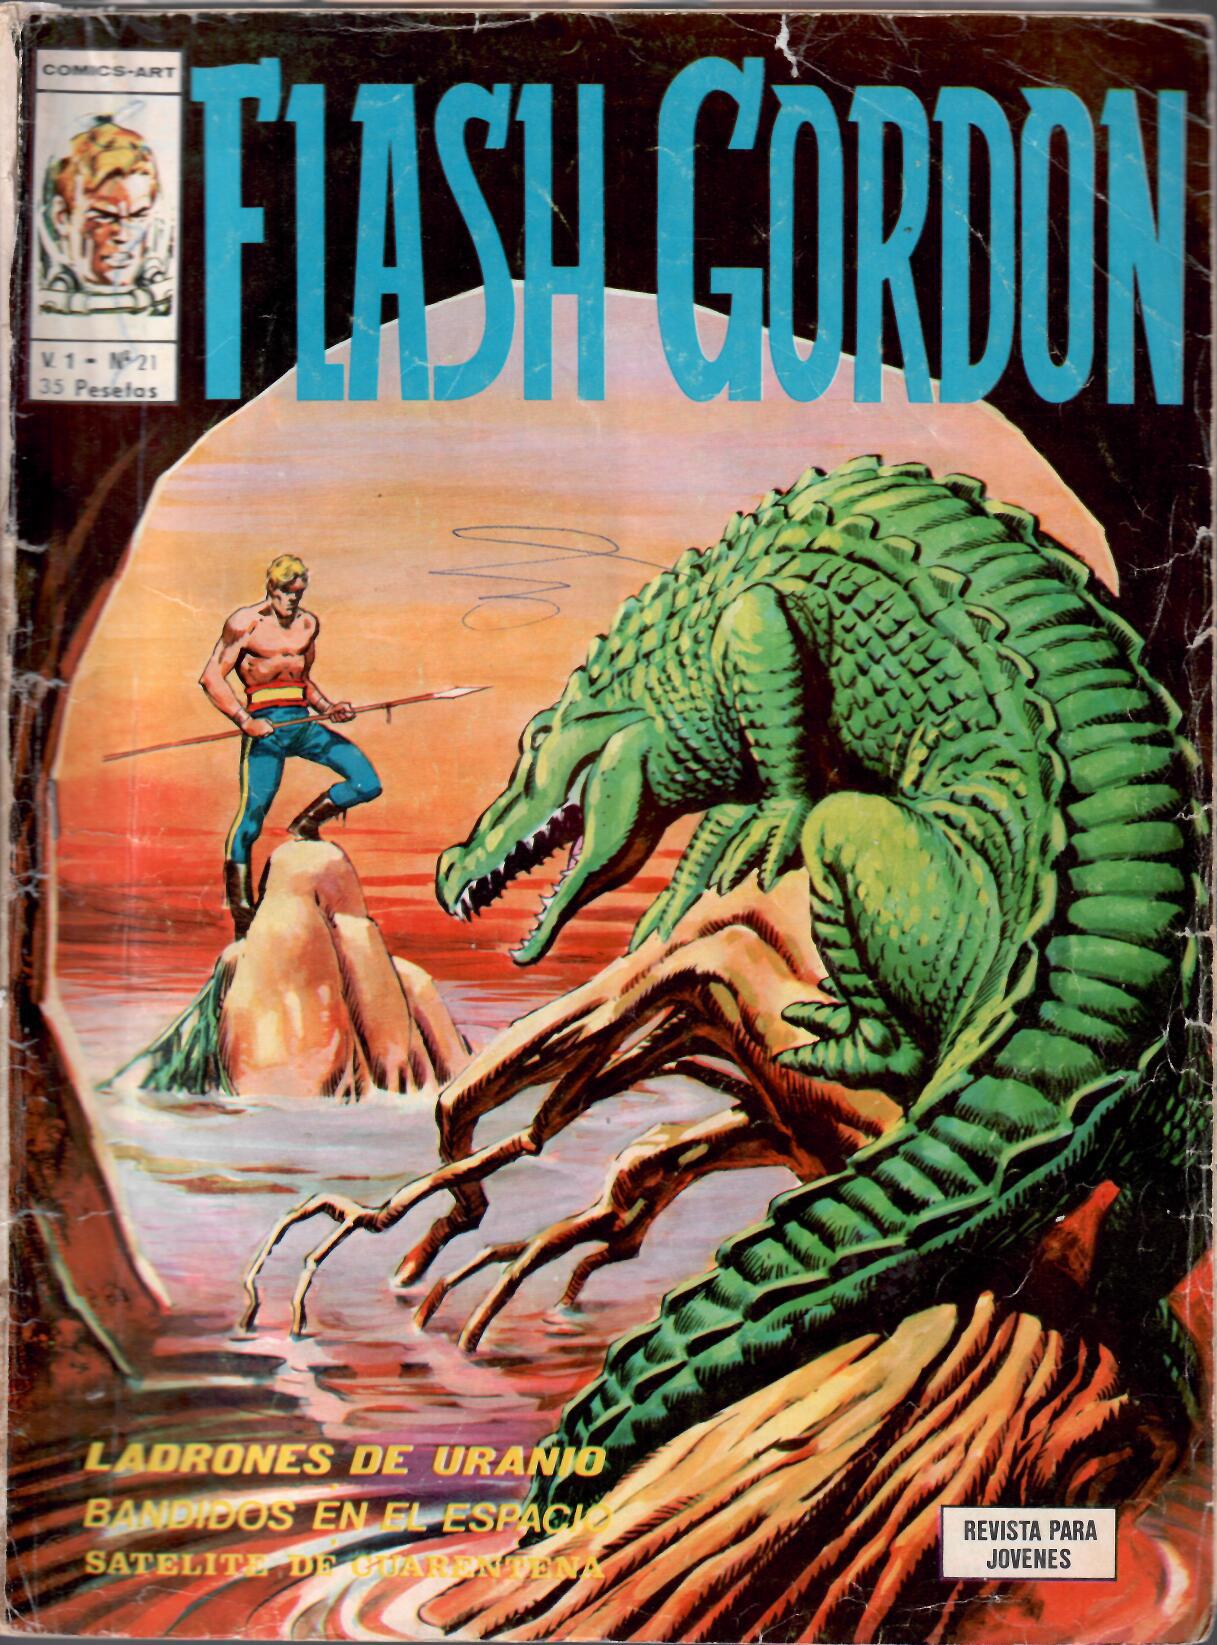 Flash Gordon v1. Vértice 1974. Nº 21